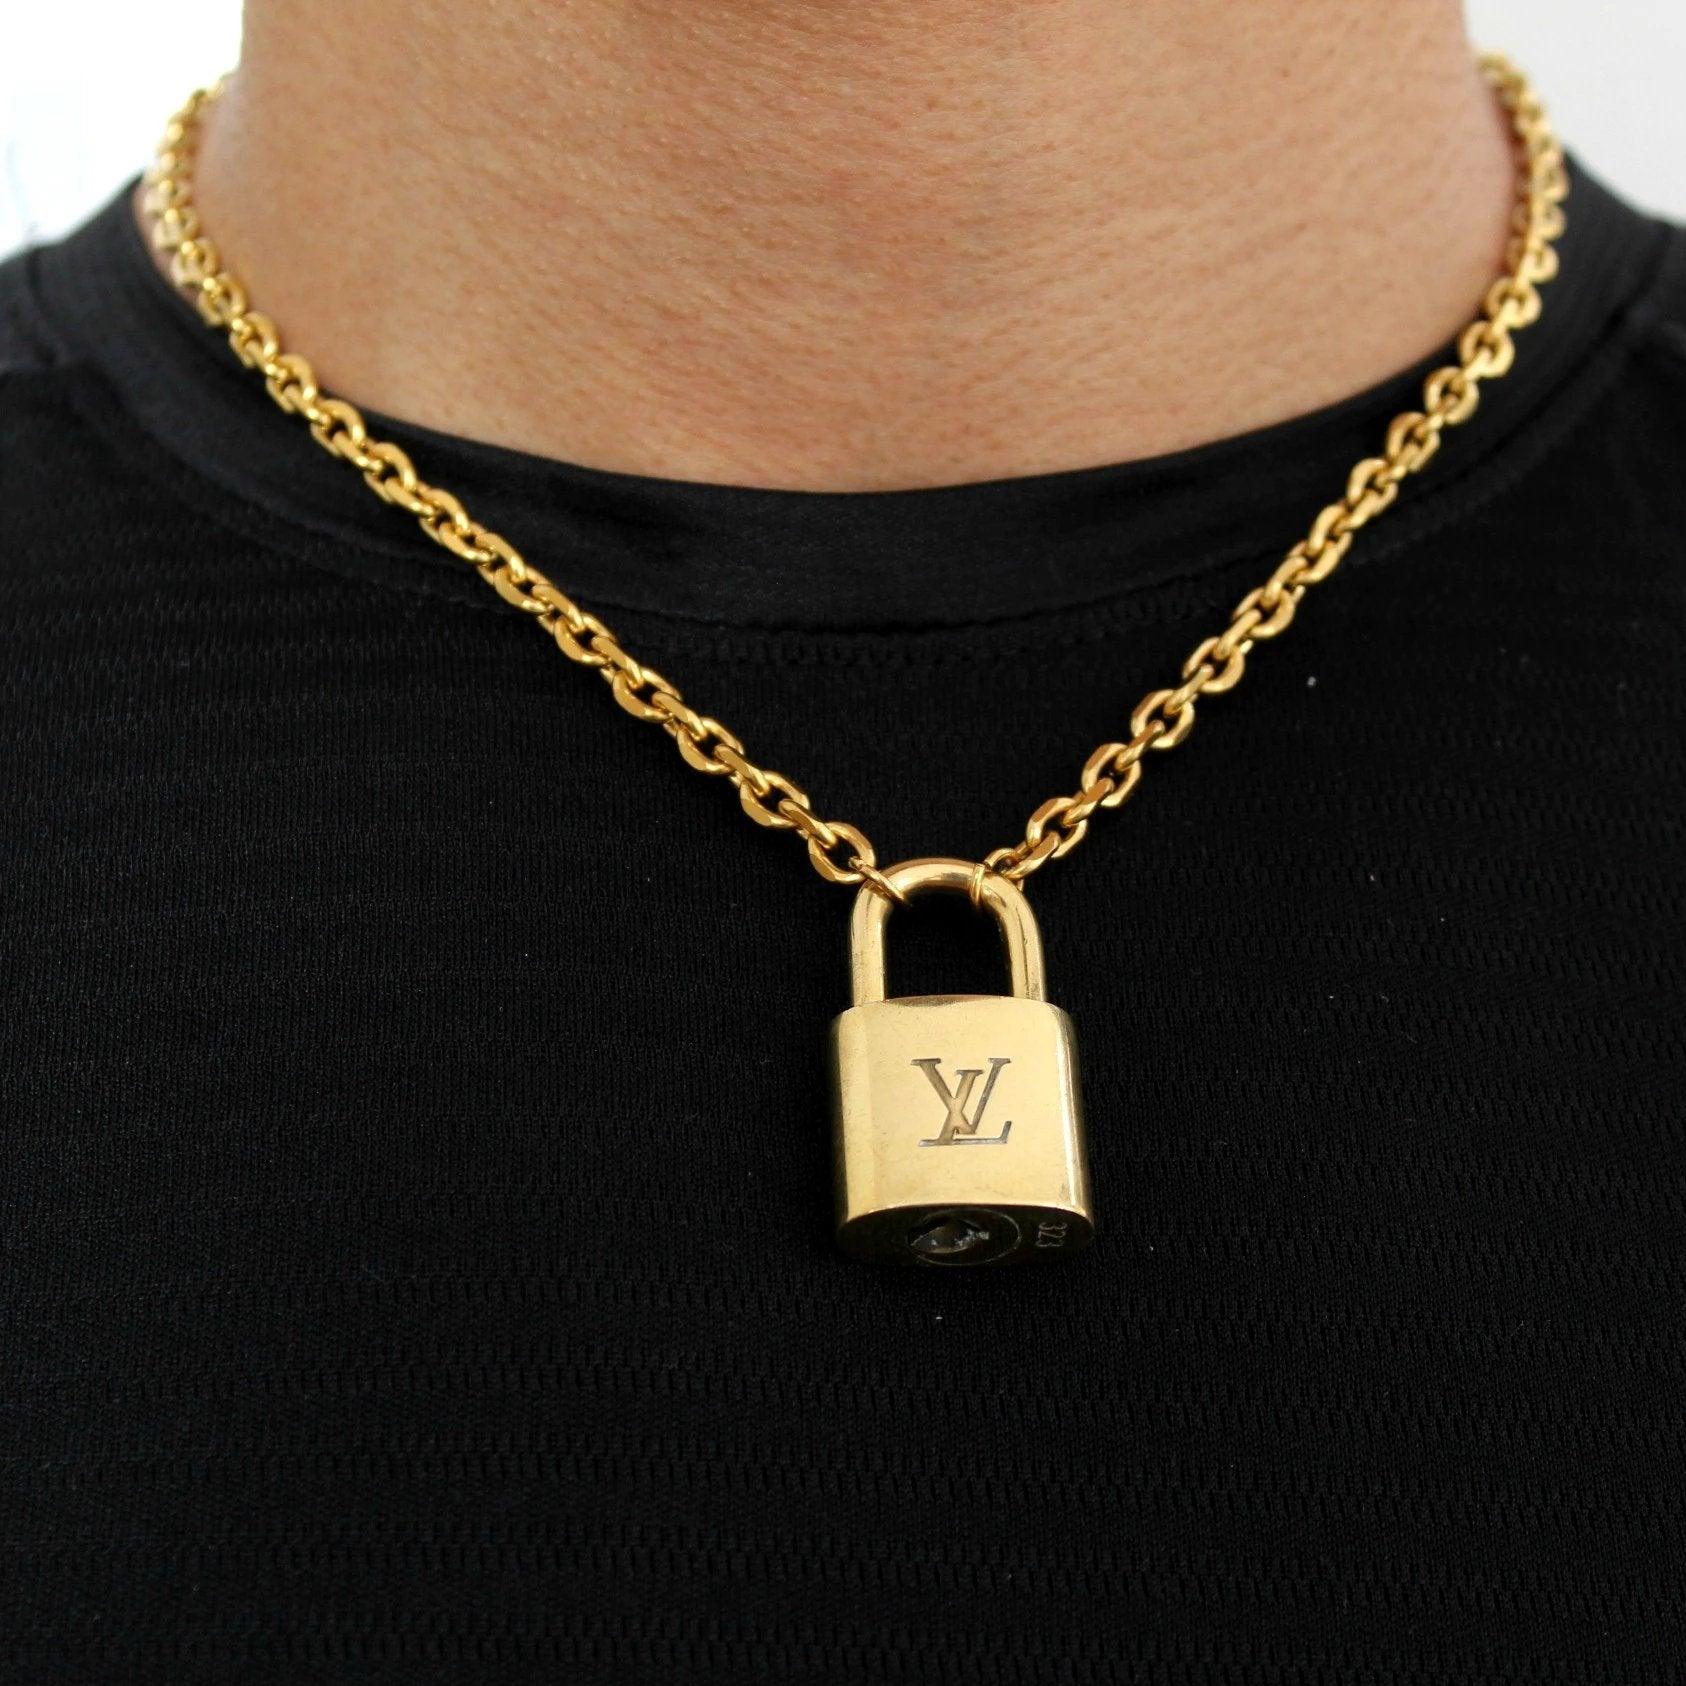 Louis Vuitton Padlock Necklace Bracelet Key Set For Him